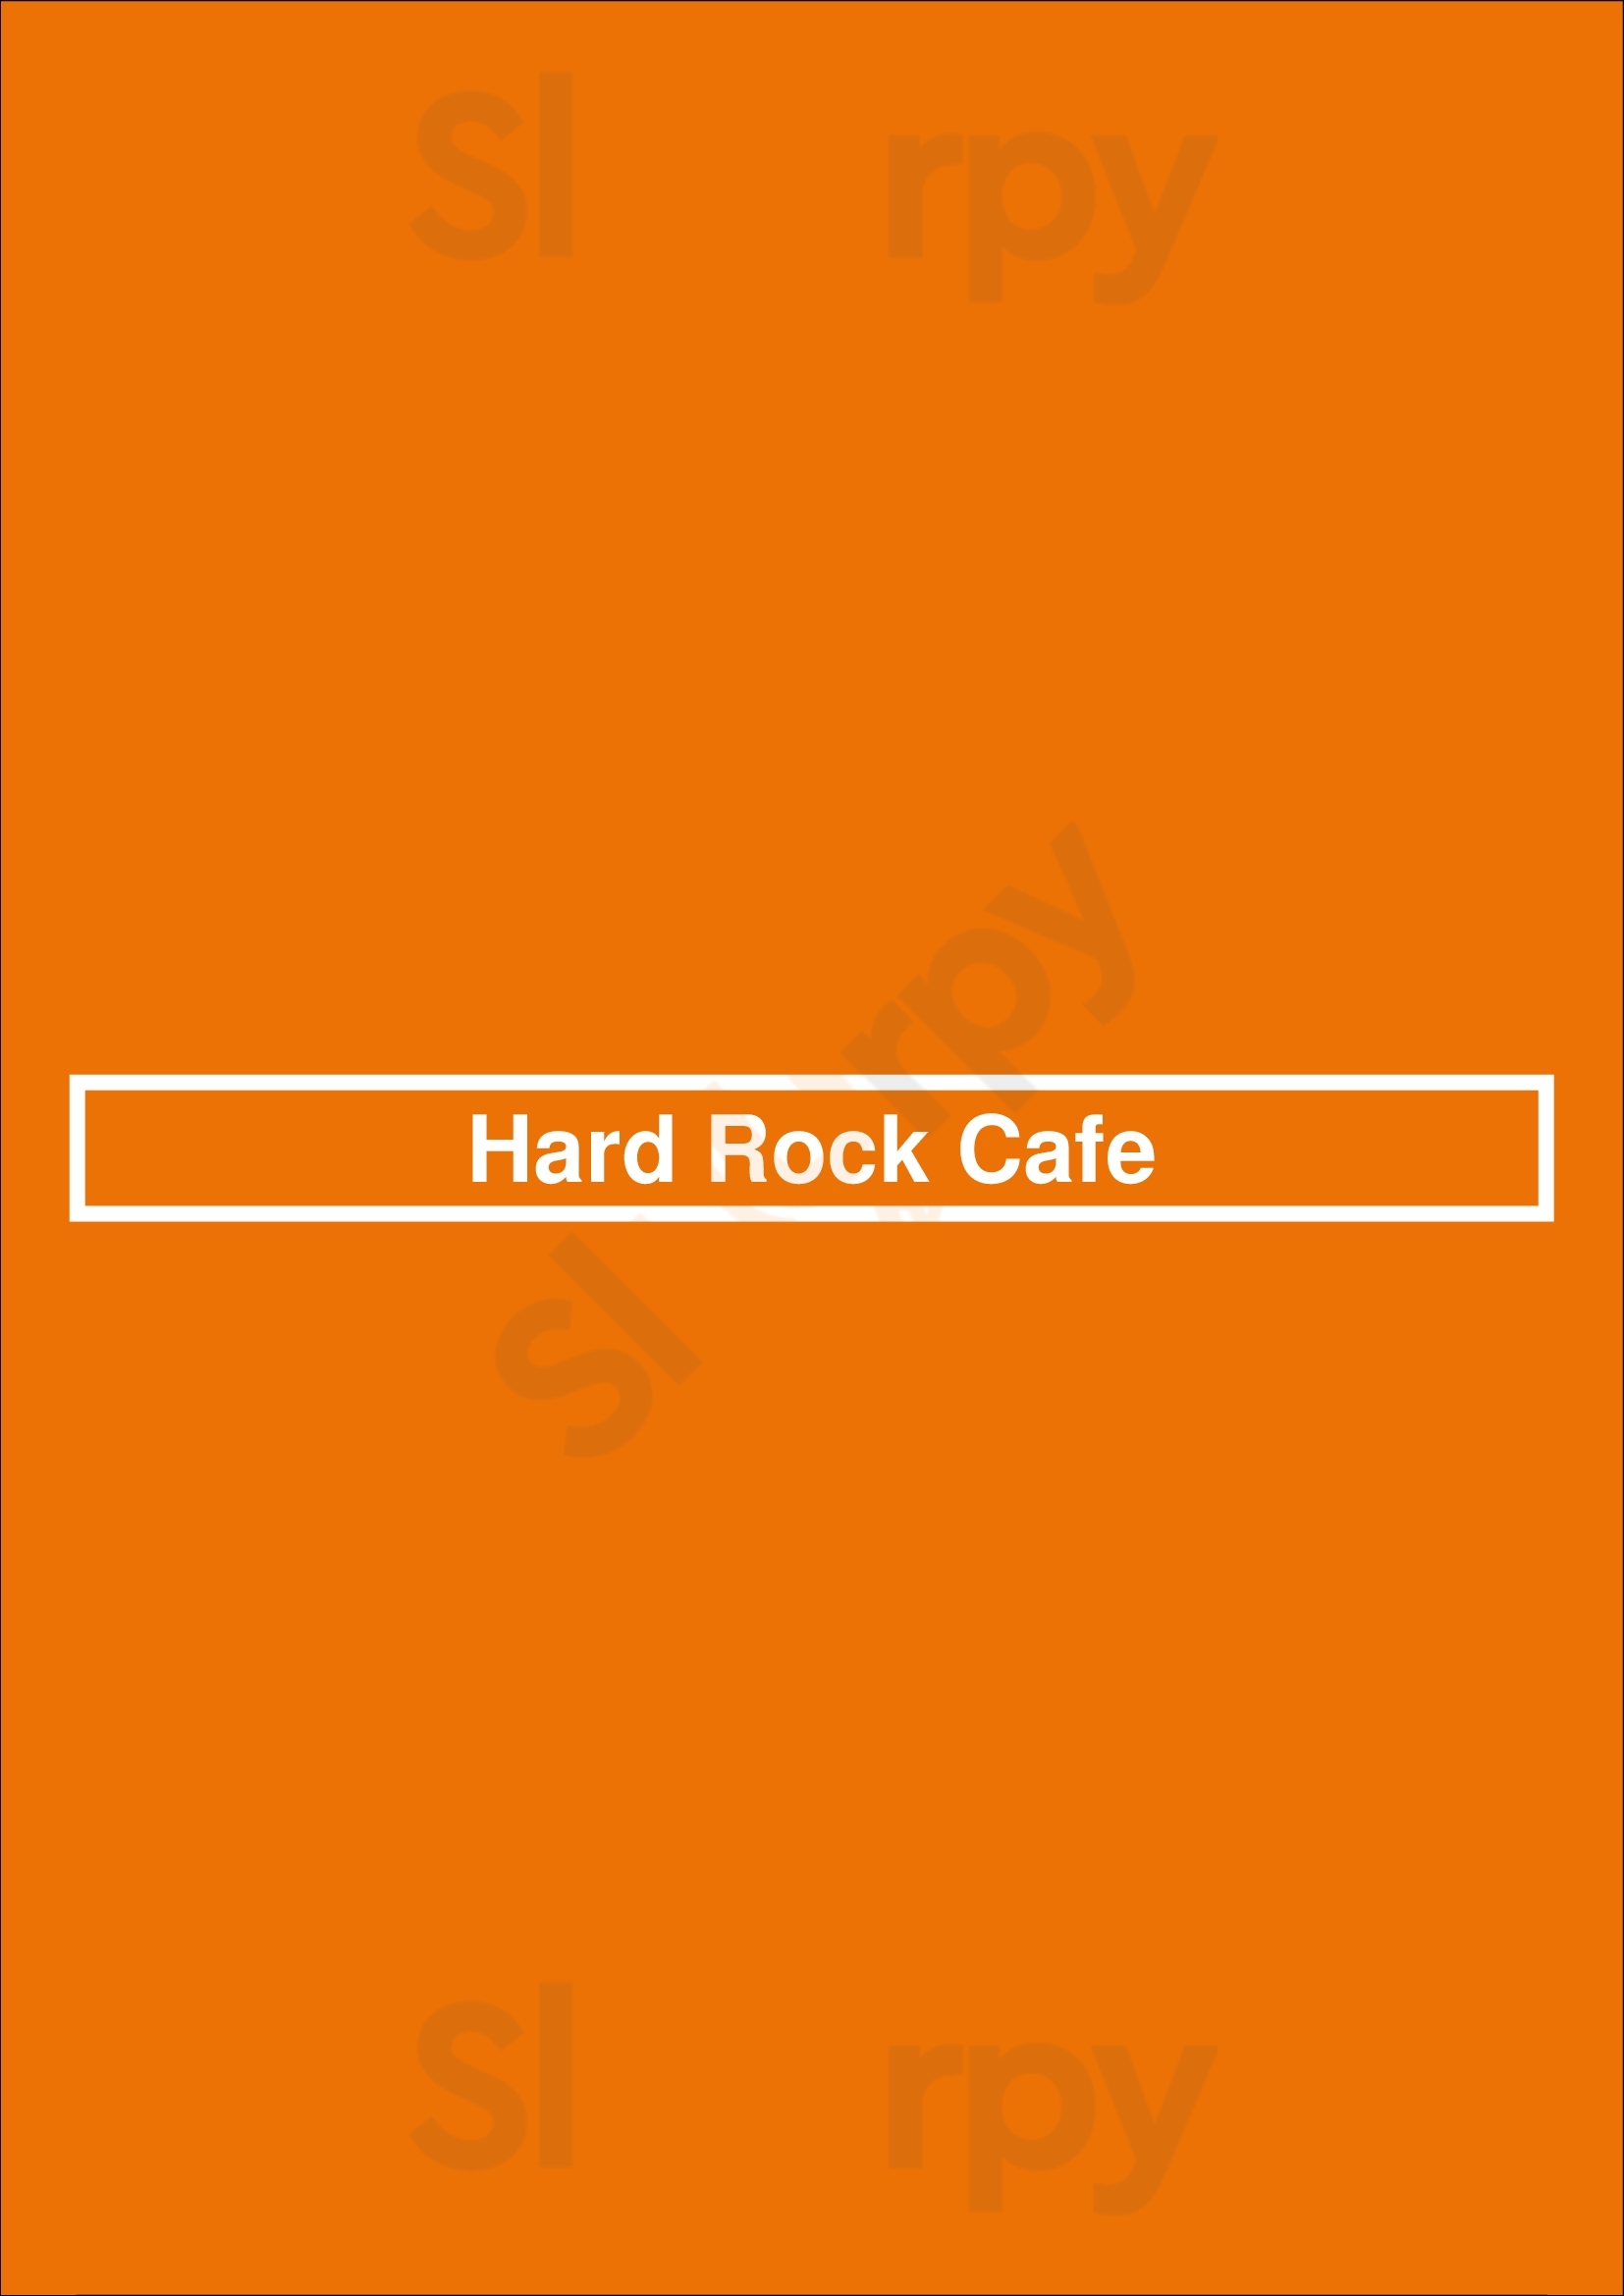 Hard Rock Cafe Chicago Menu - 1